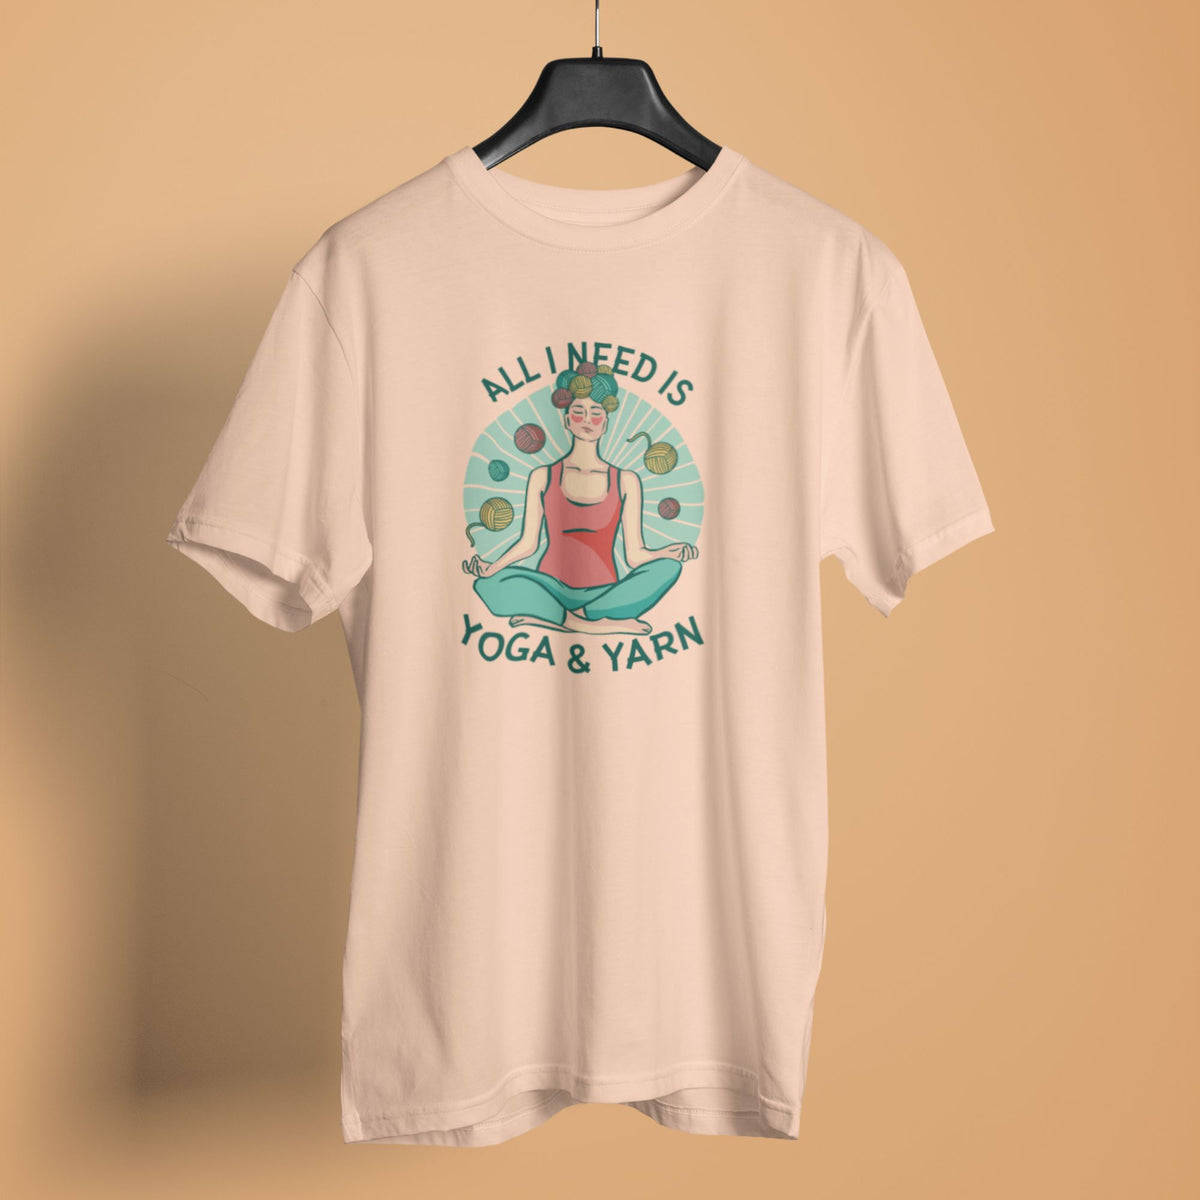 Buy Yoga T-Shirts, Yoga Print T-Shirt, Yoga T-Shirt Designs, Yoga T- Shirts for Female